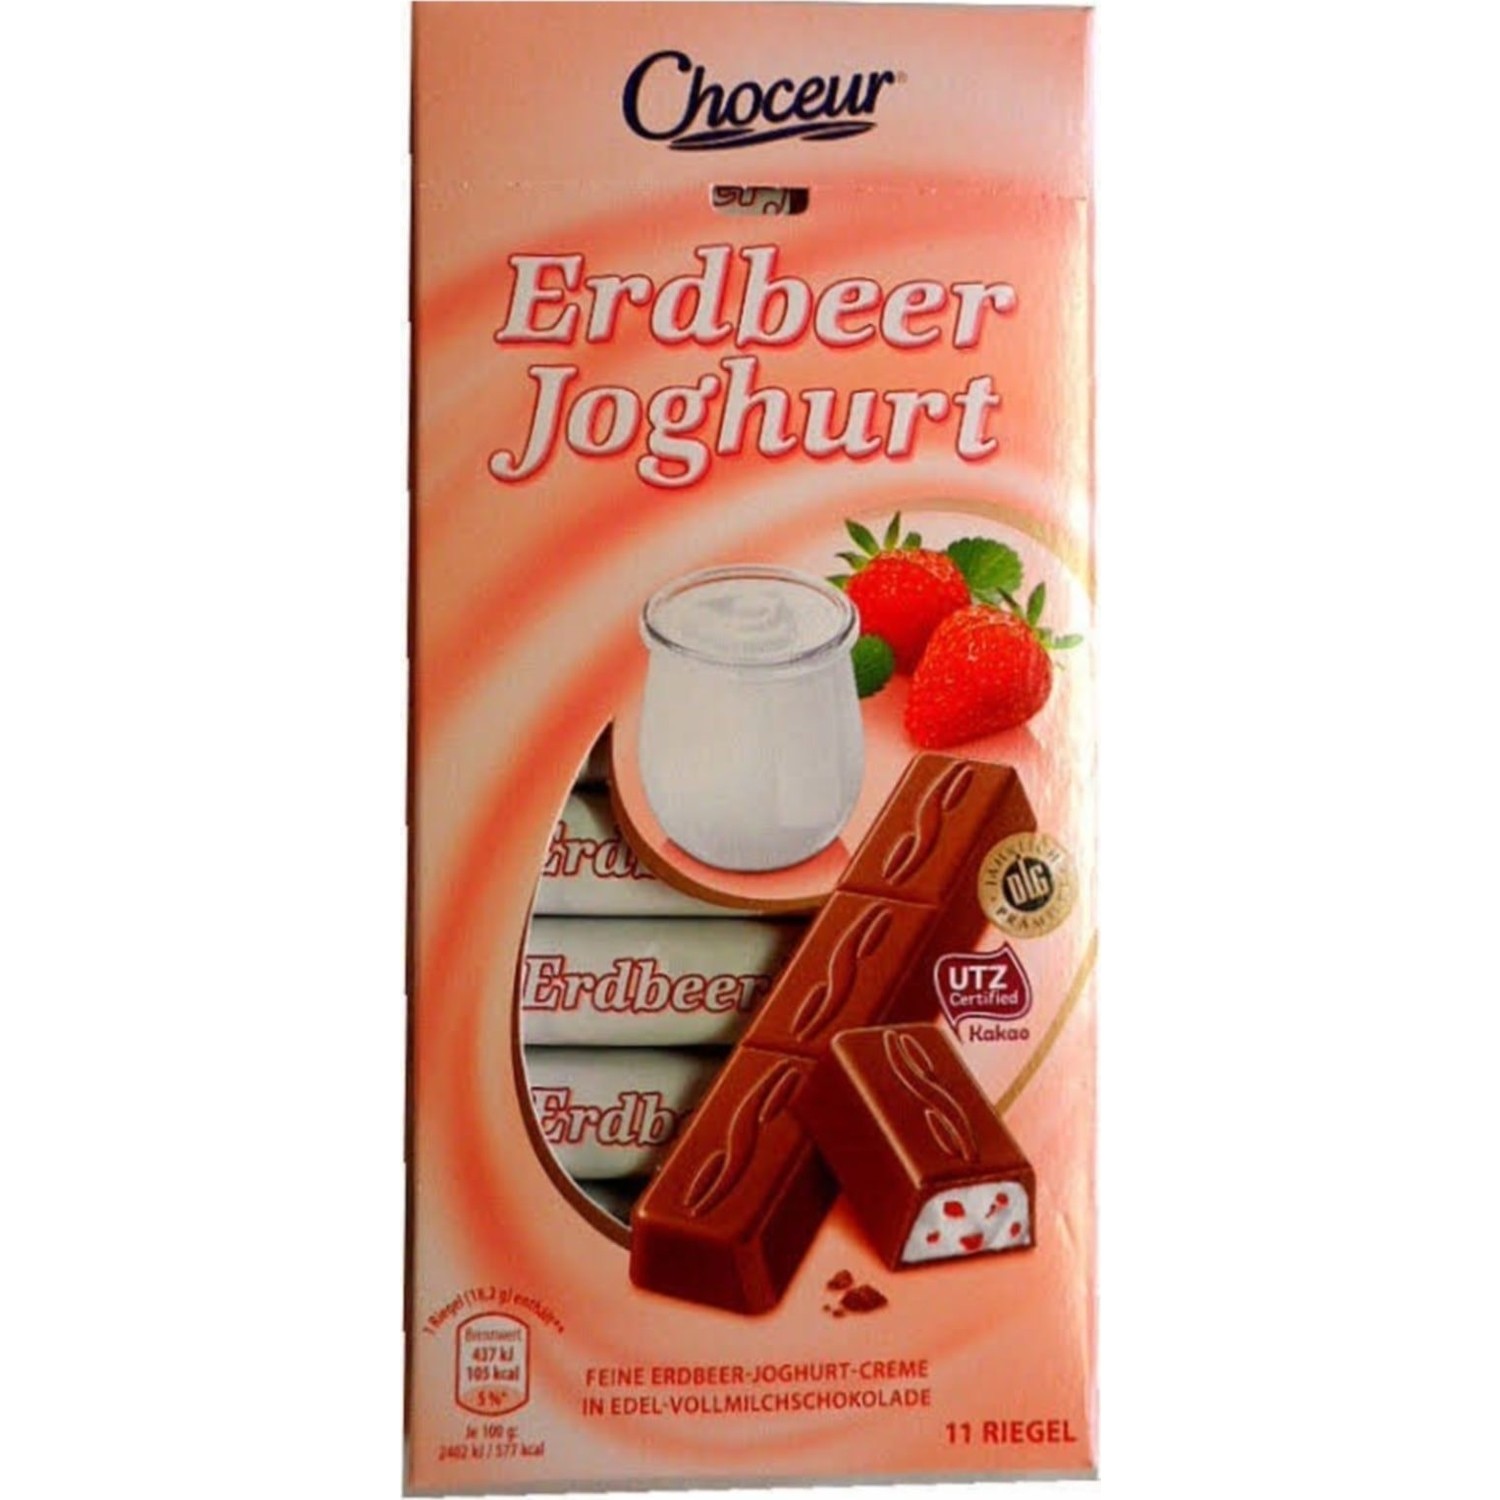 Choceur Erdbeer Joghurt 11 Riegel Çilekli Yoğurtlu Çikolata Fiyatı